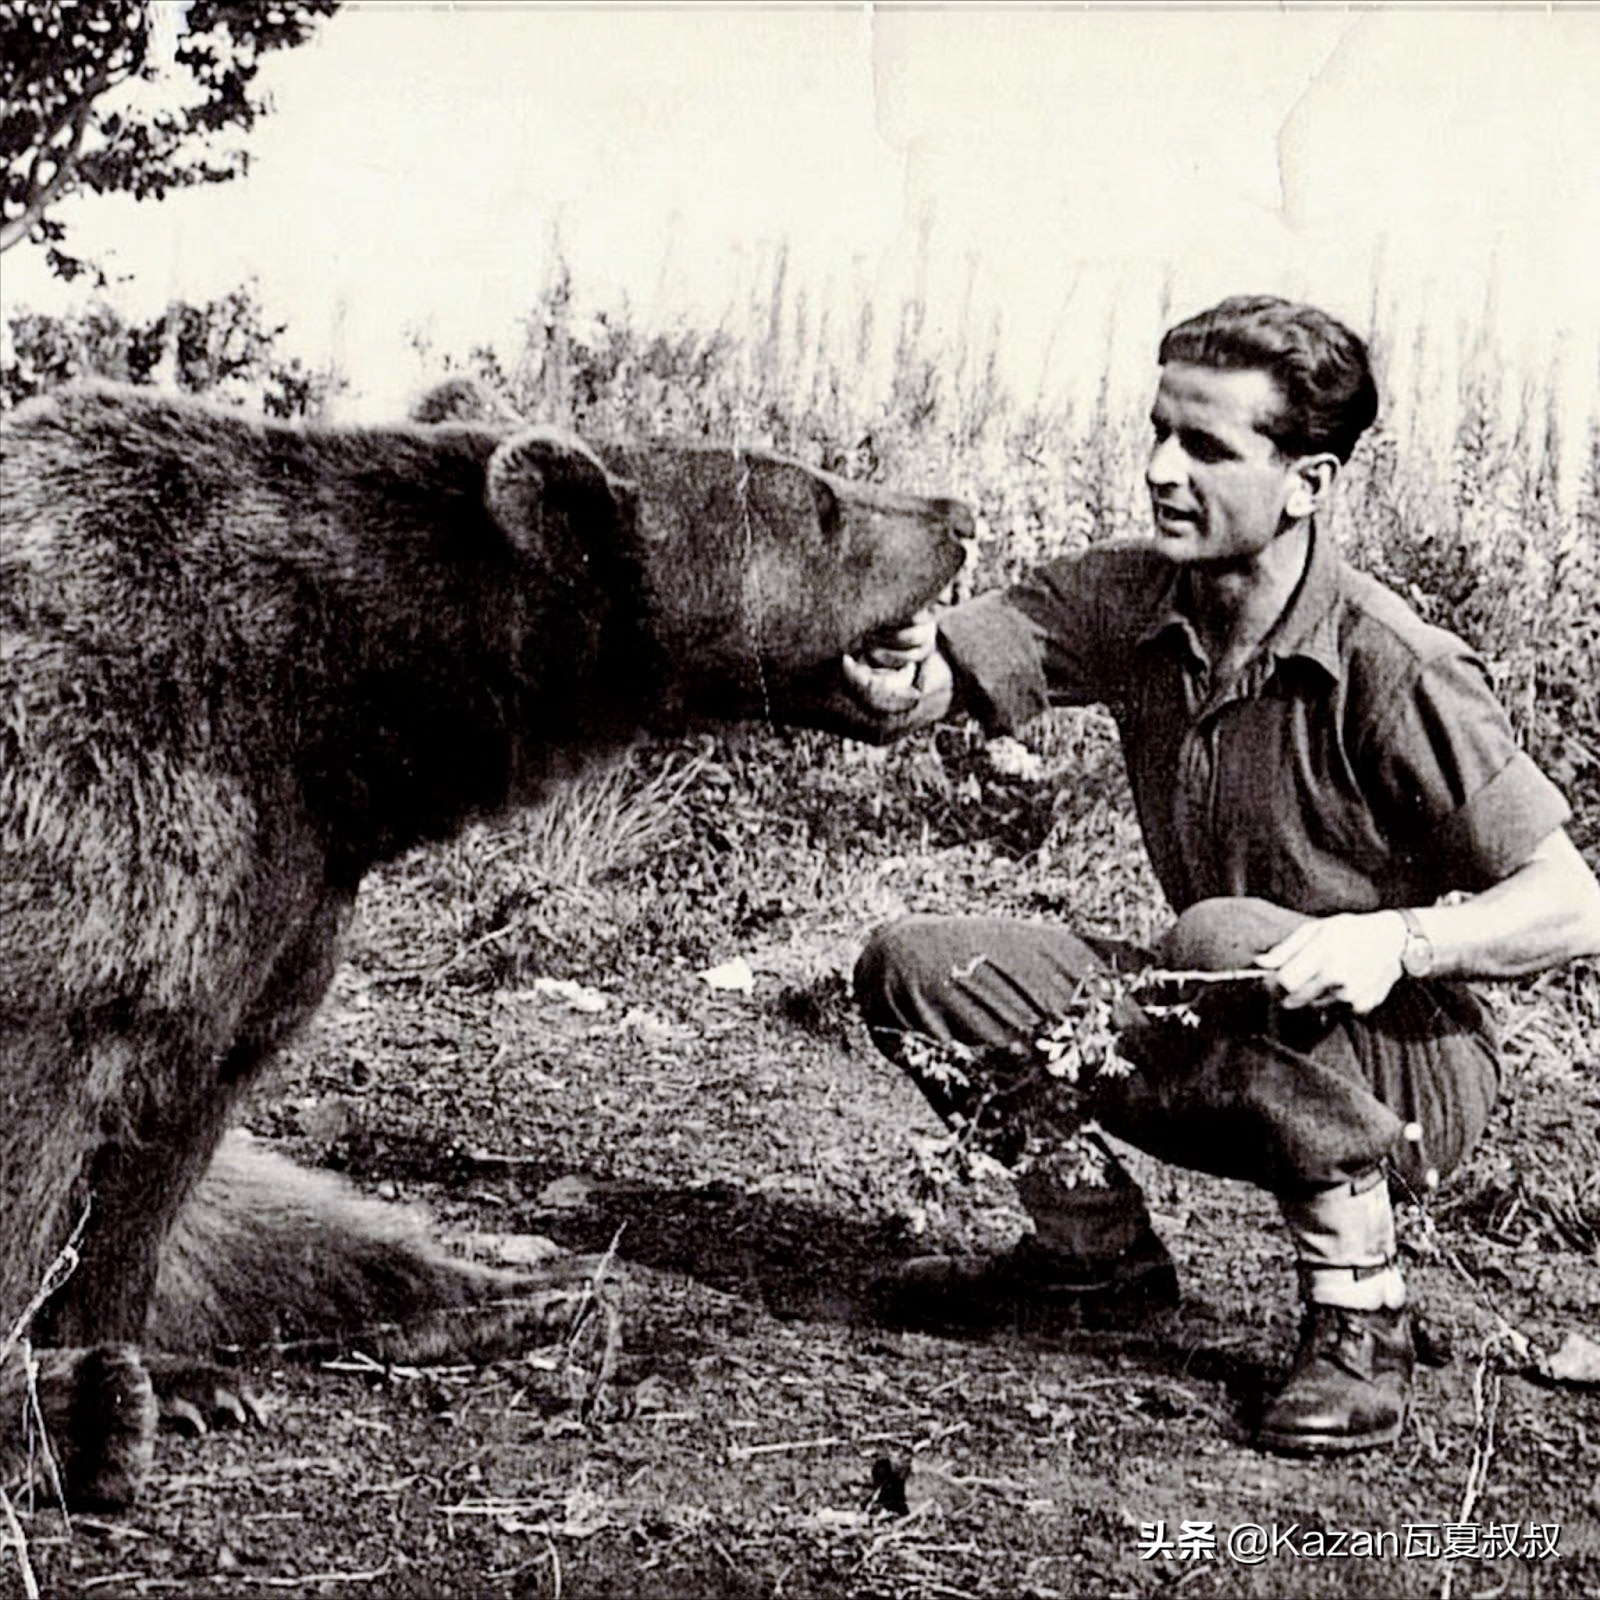 二战中波兰军队的棕熊士兵,给编制发工资,会抽烟喝酒还会运炮弹